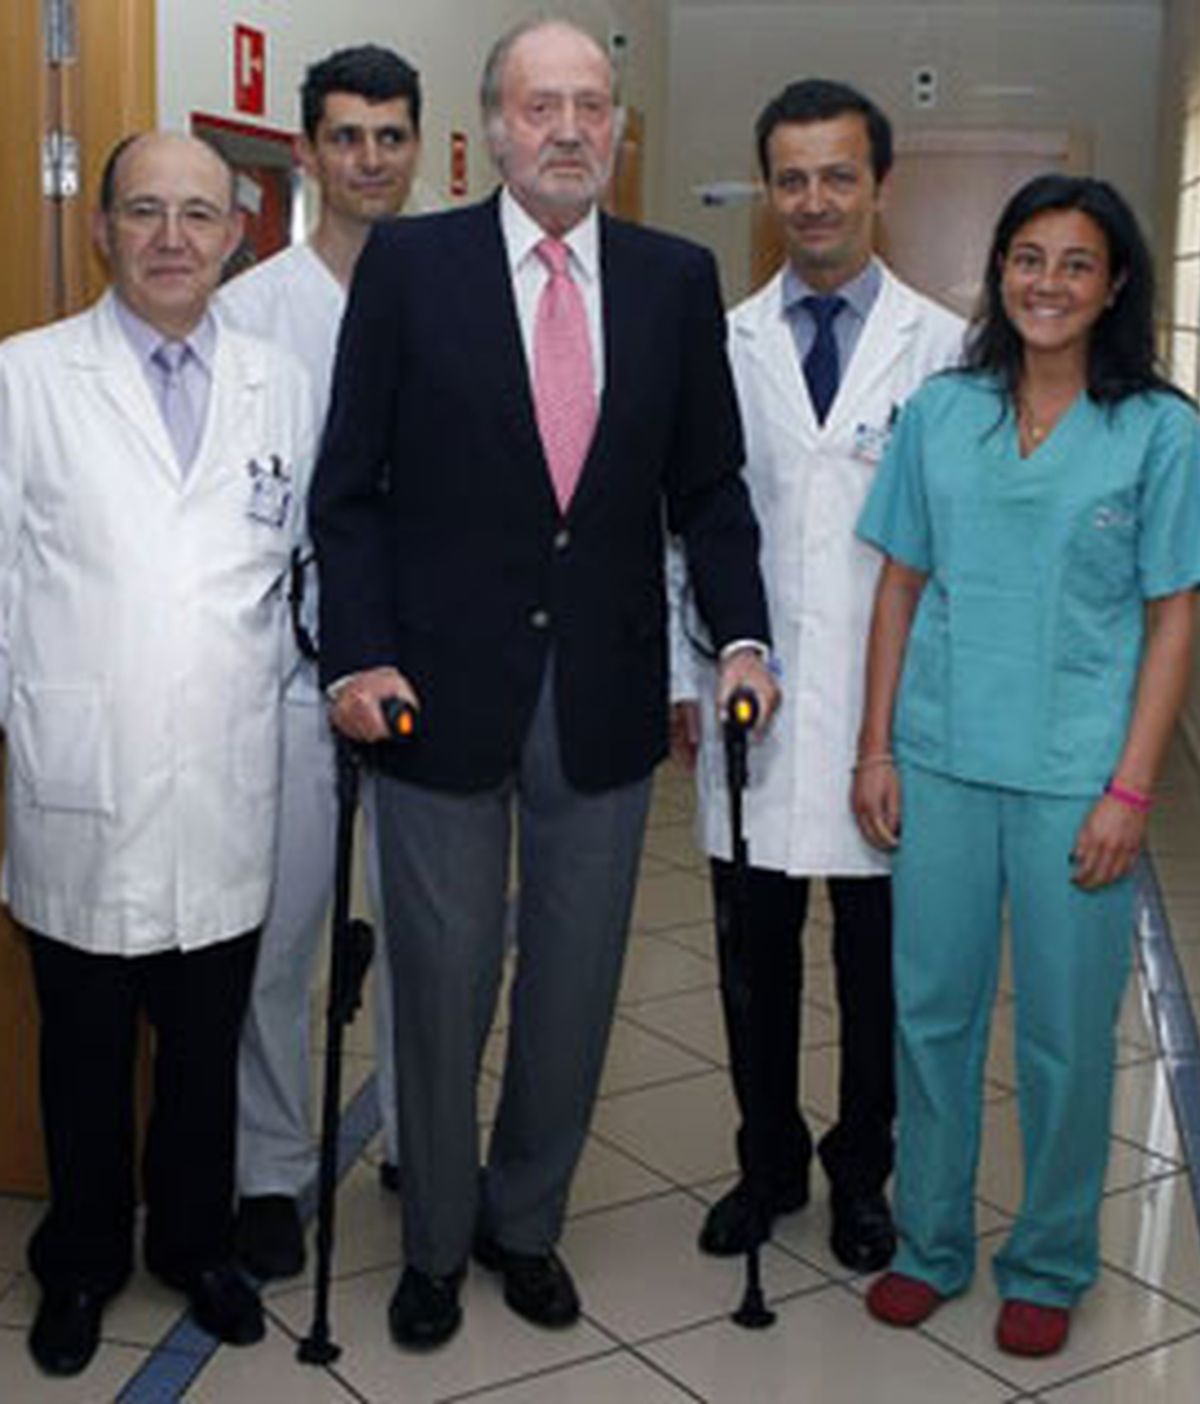 El Rey Don Juan Carlos posa con el equipo médico que le atendióen su reciente operación de rodilla tras recibir el alta. Foto: EFE / Archivo